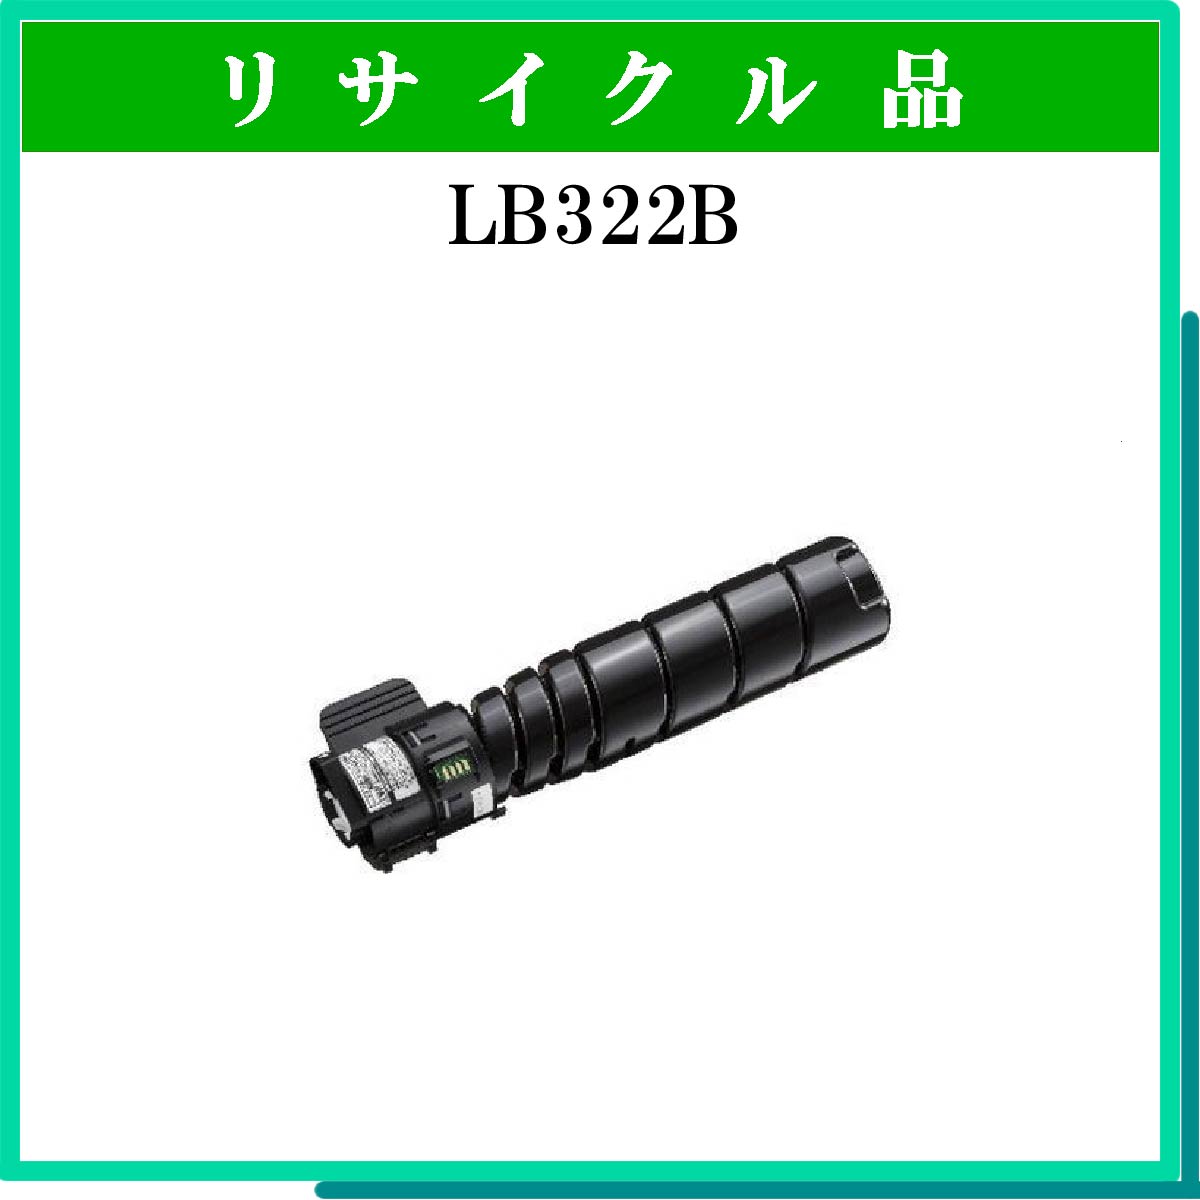 LB322B